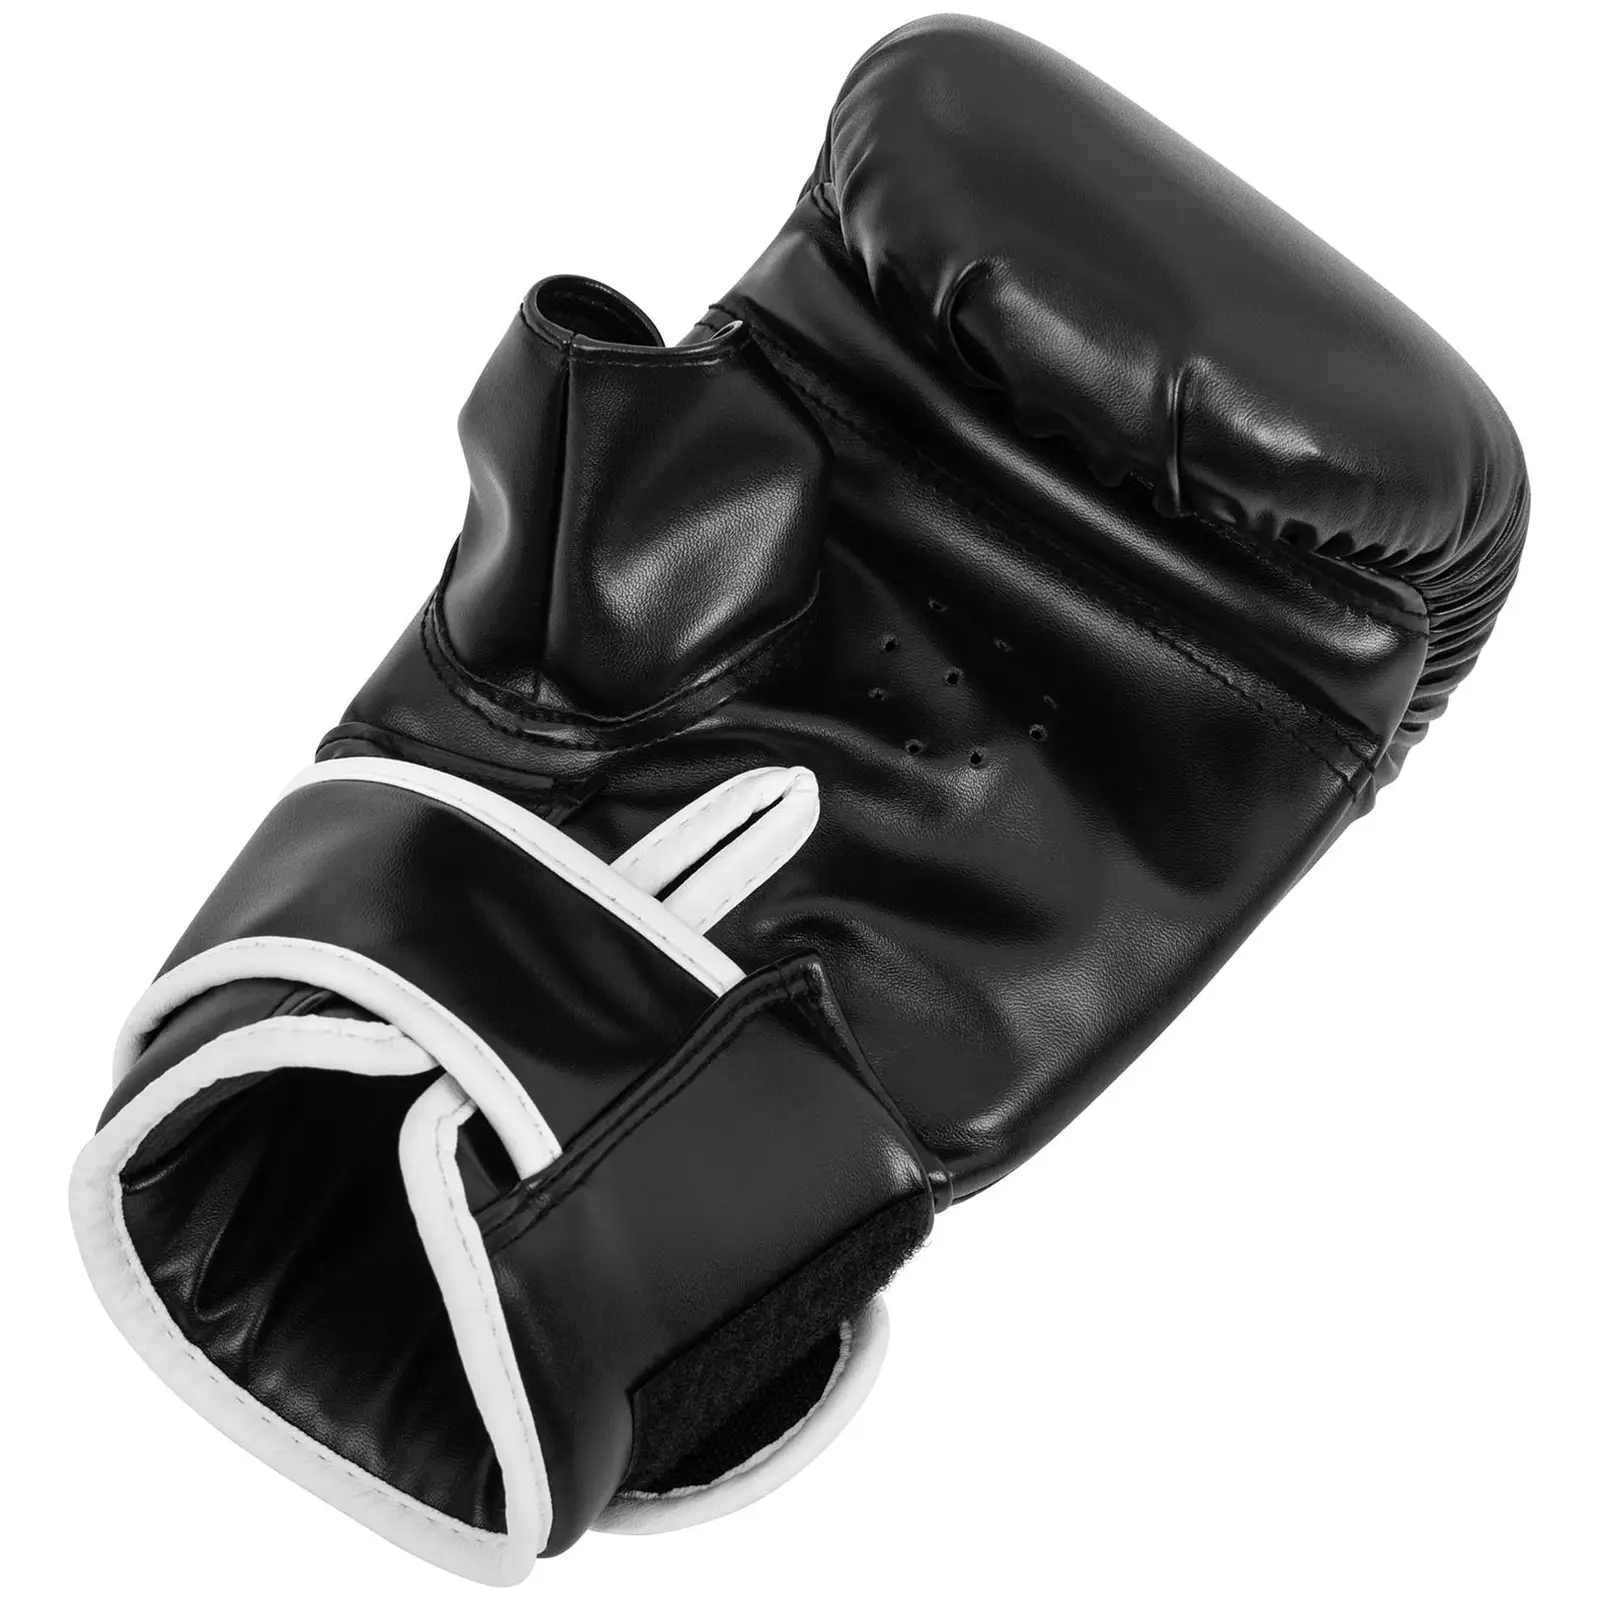 Rękawice bokserskie do treningu na worku - 10 oz - czarne